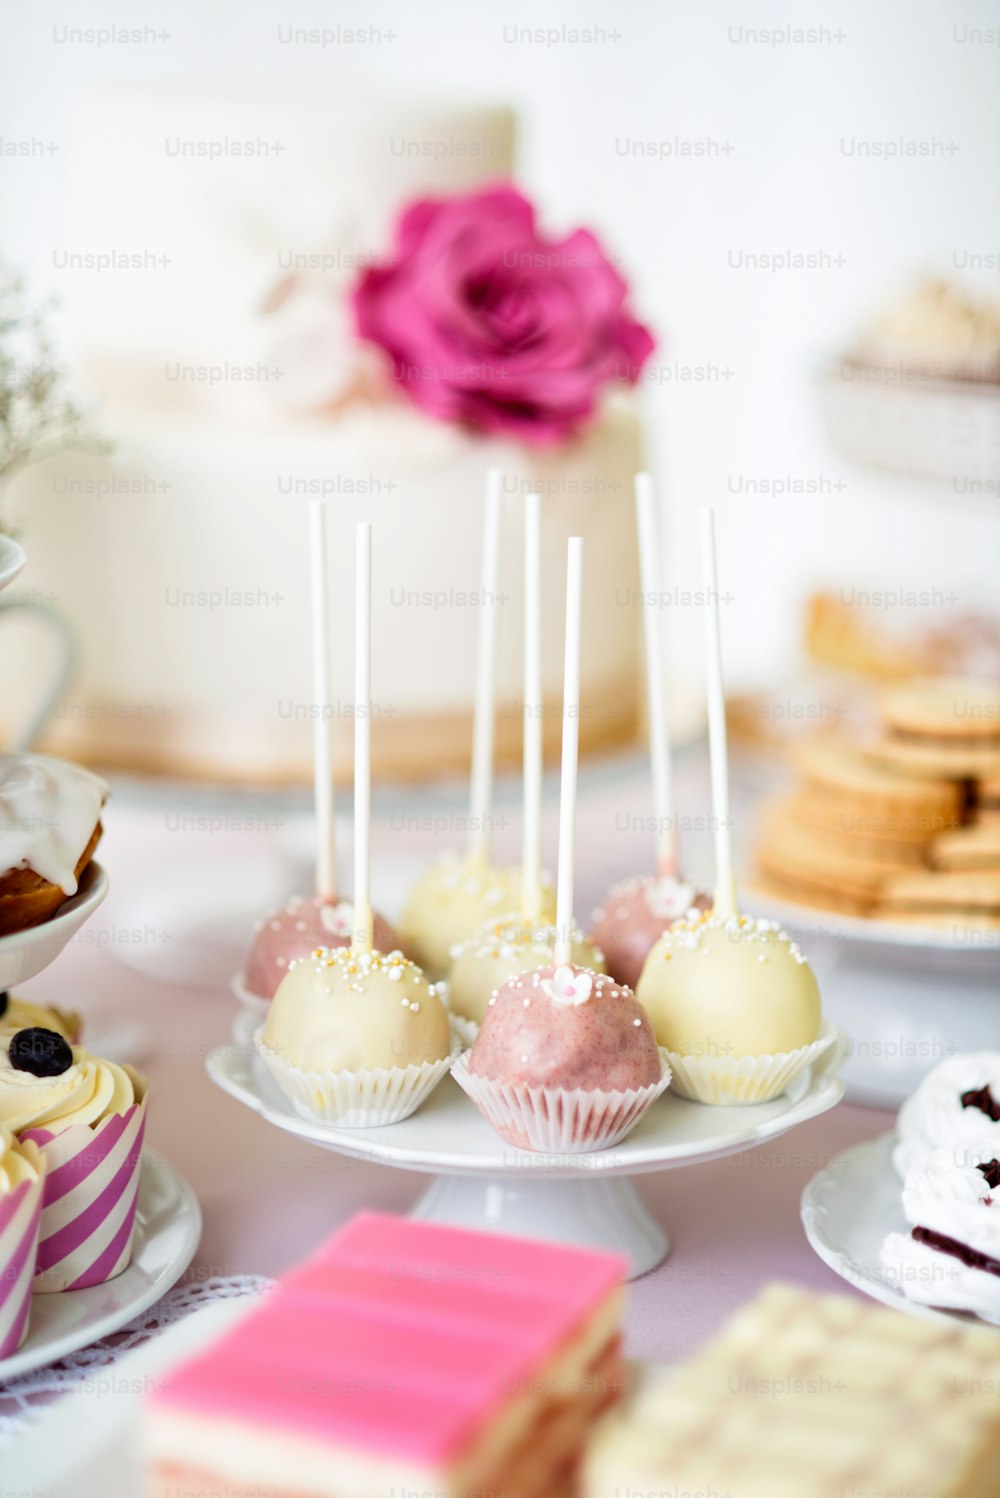 Mesa com bolo branco e rosa pops no cakestand e bolos diversos. Chocolate.